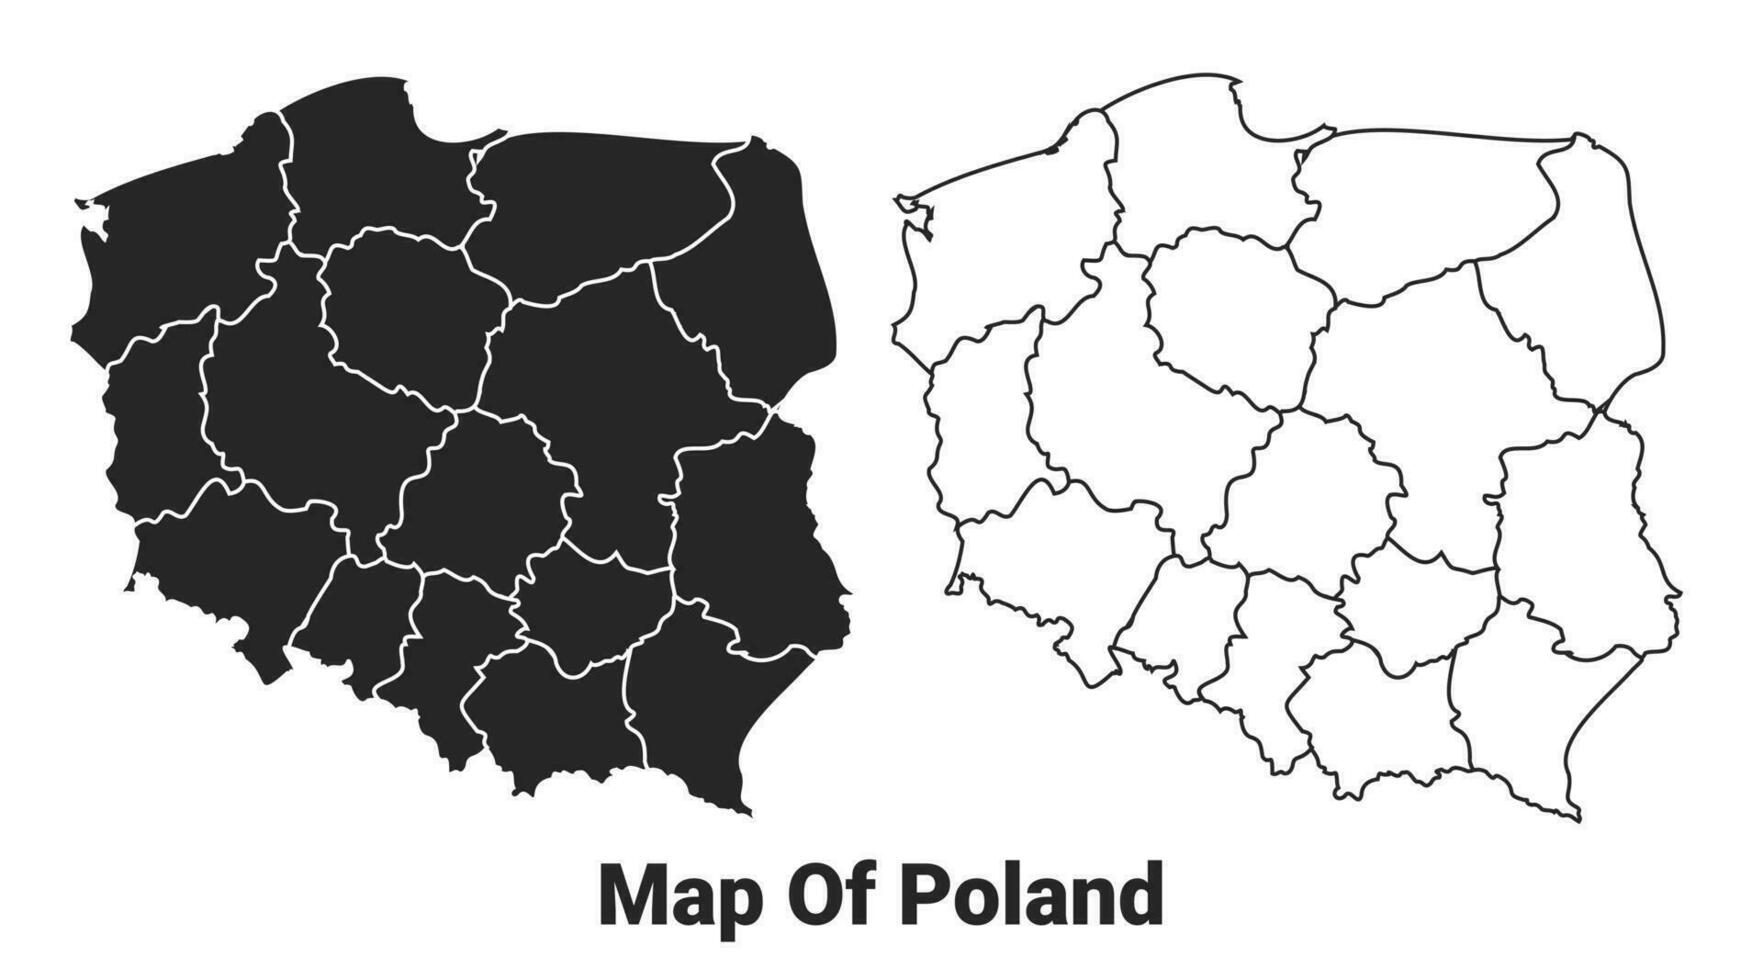 Vektor schwarz Karte von Polen Land mit Grenzen von Regionen